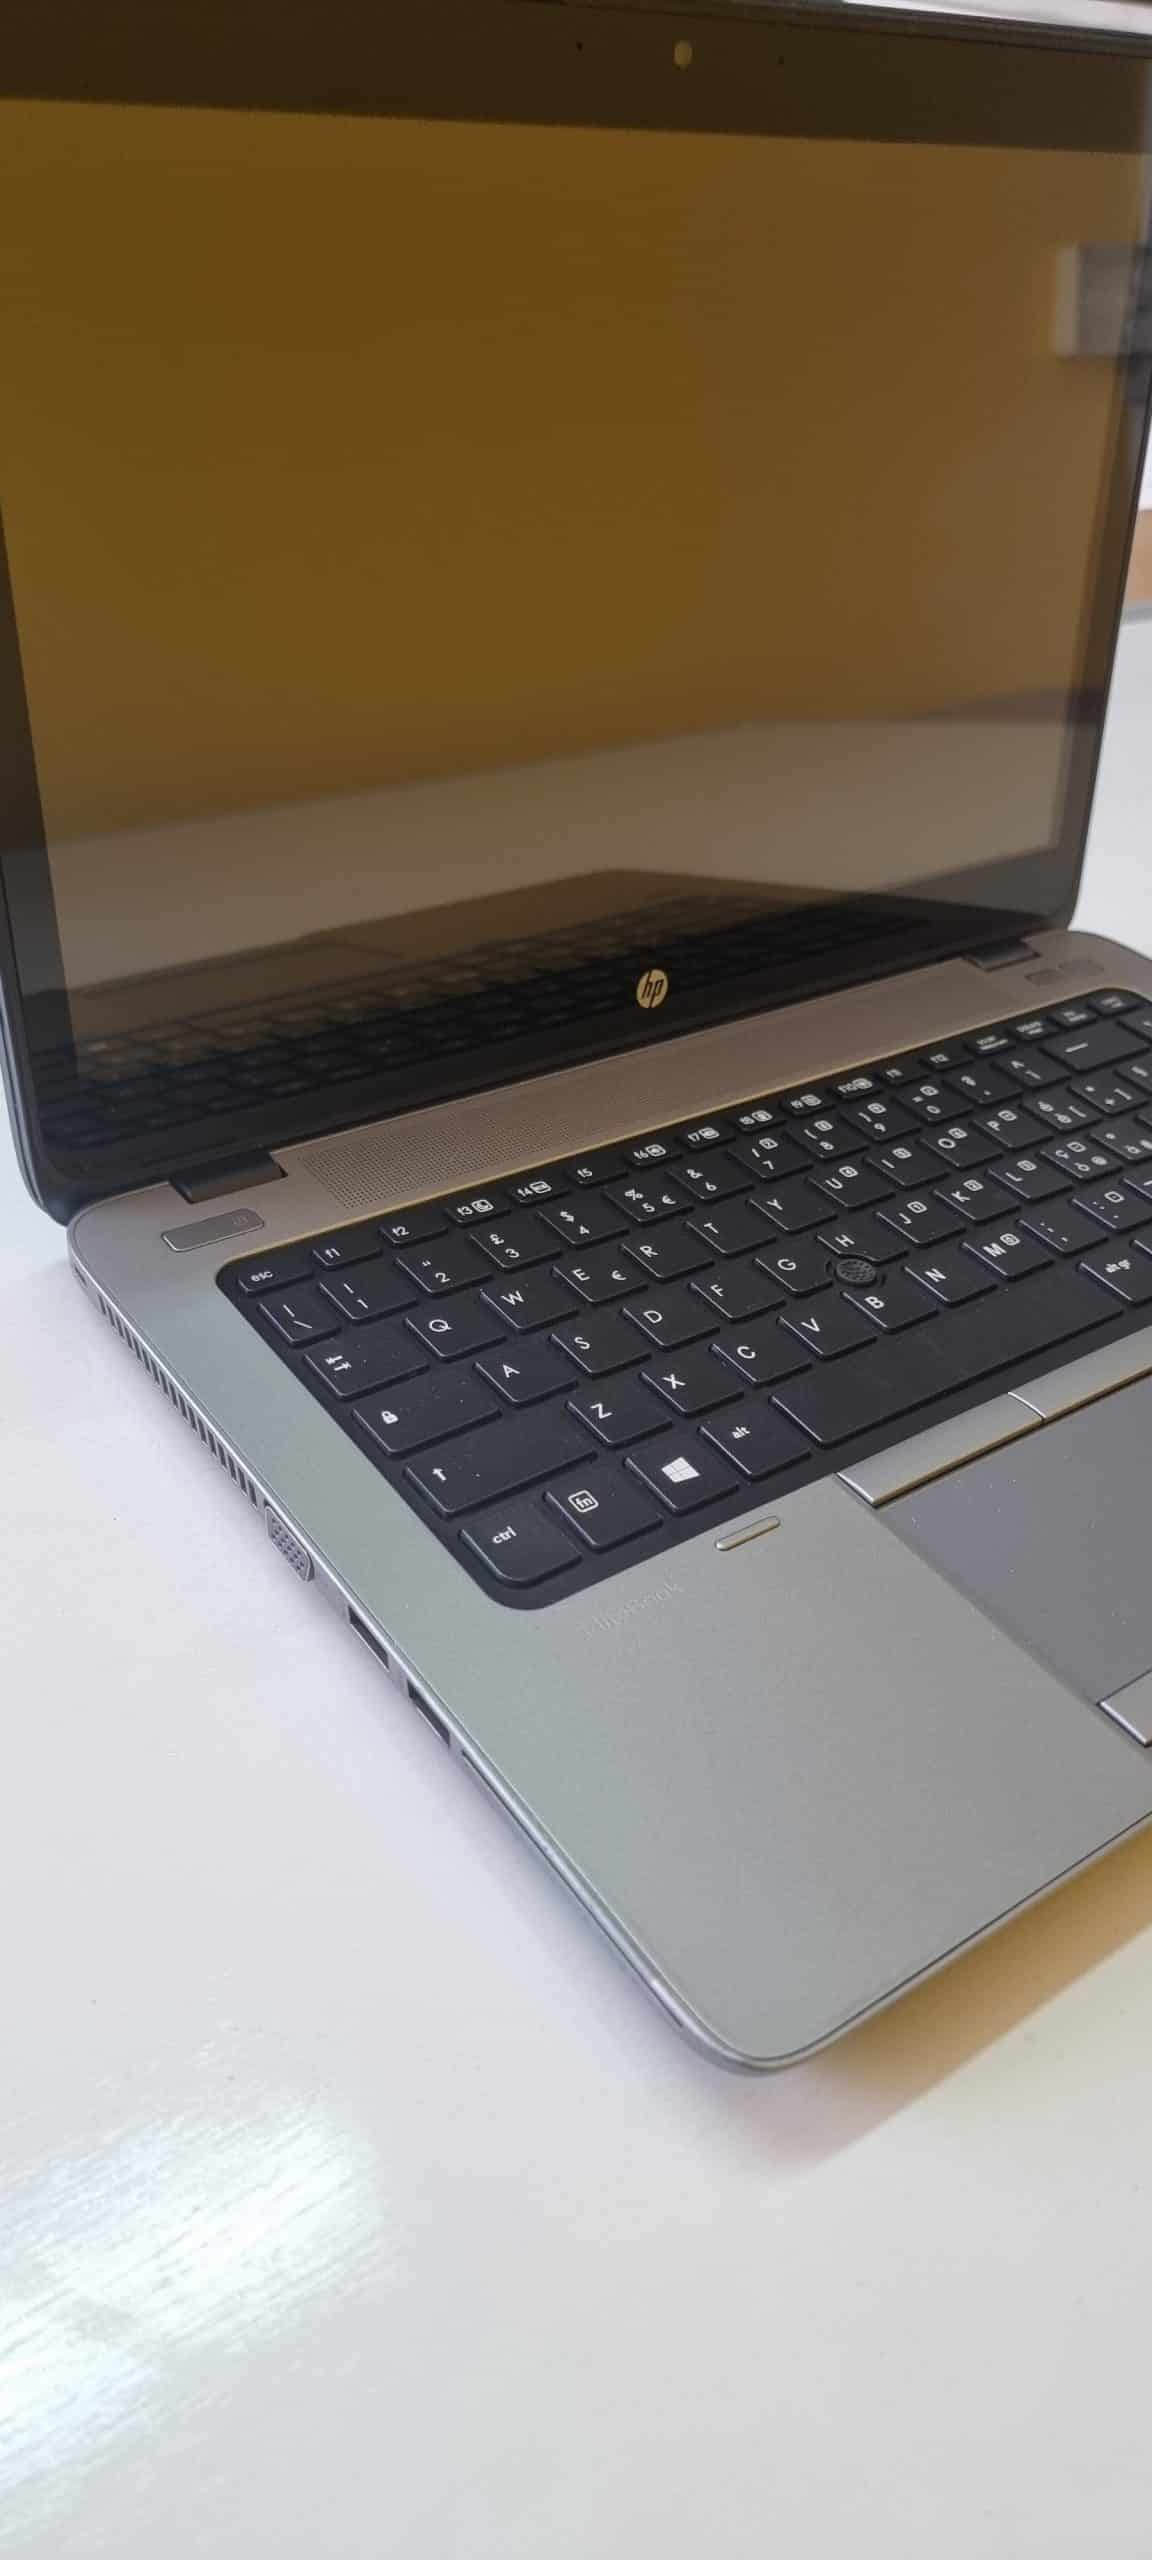 Hp EliteBook 840 G1 Notebook | Intel Core i5-4300U 1.9Ghz | 14